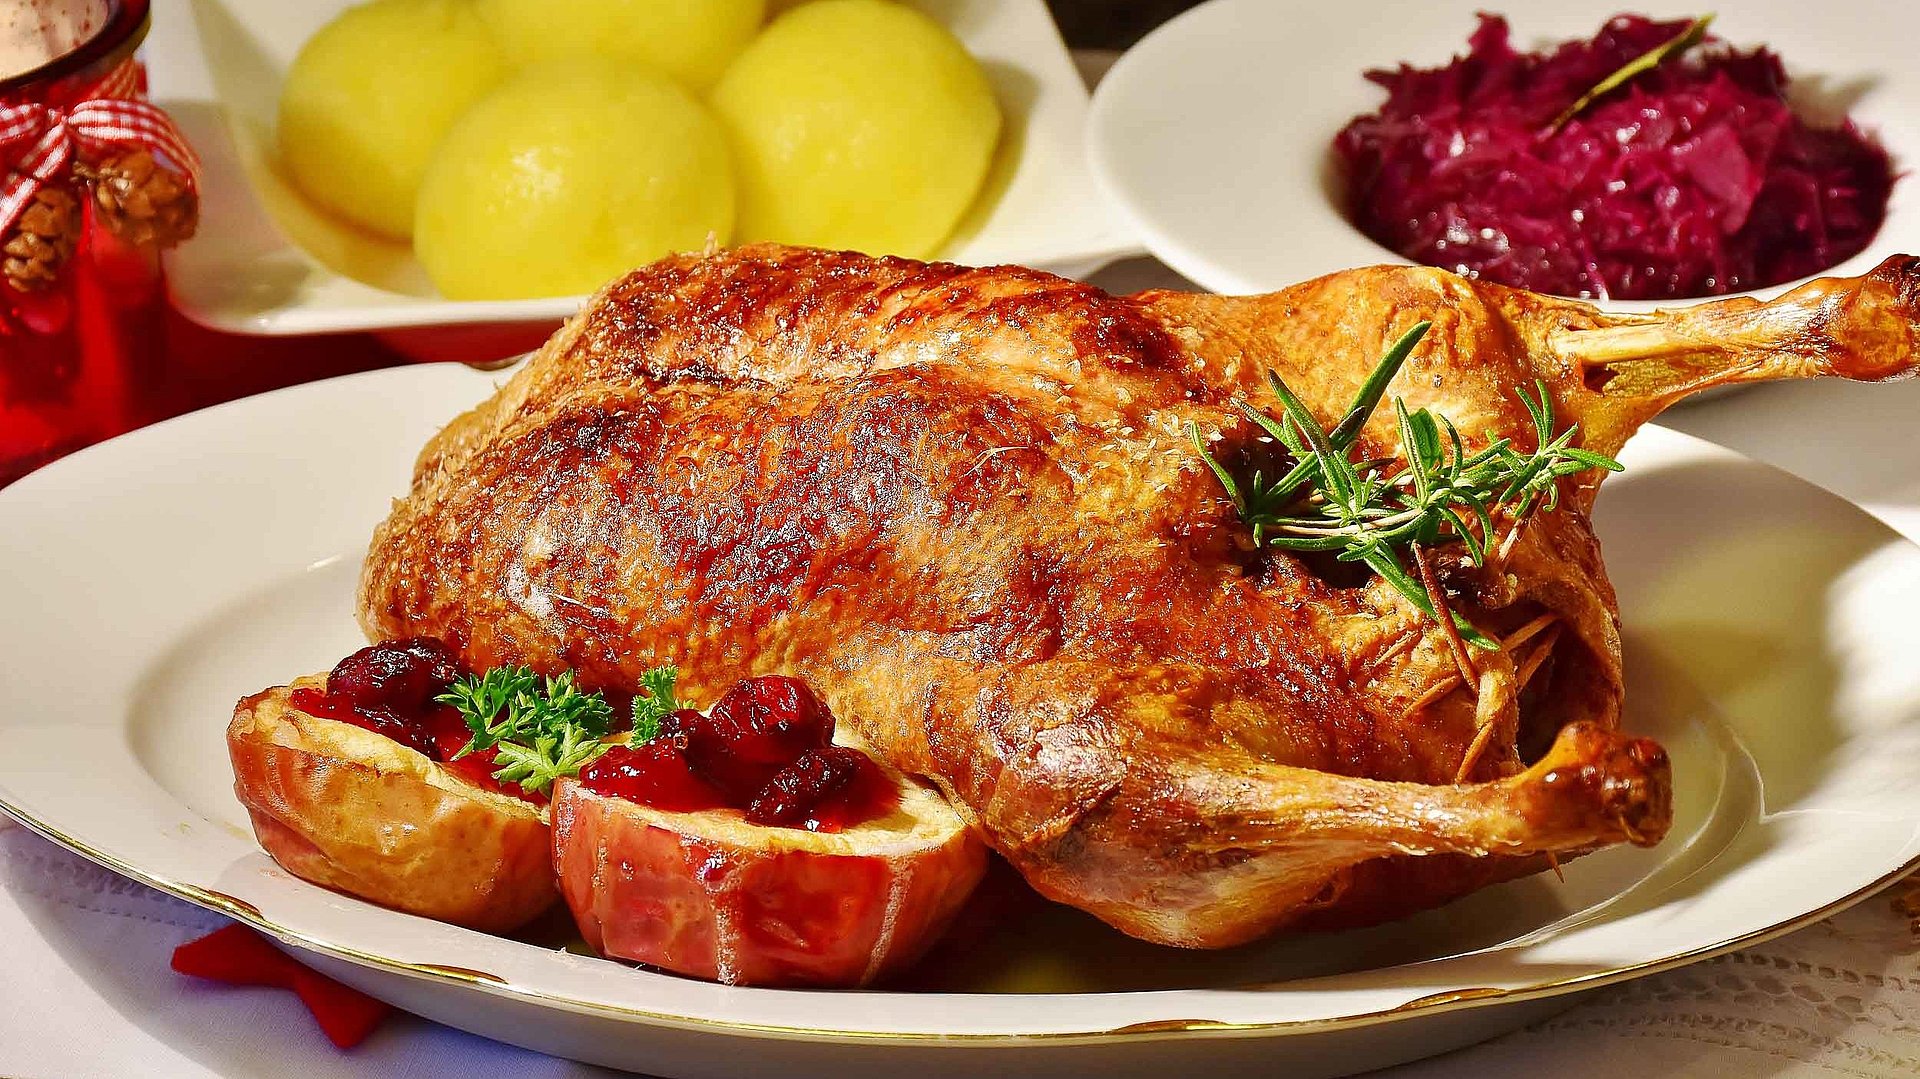 Gastronomie in Kempten - Teller mit frischer Ente und separaten Tellern jeweils mit Knödeln und Rotkohl